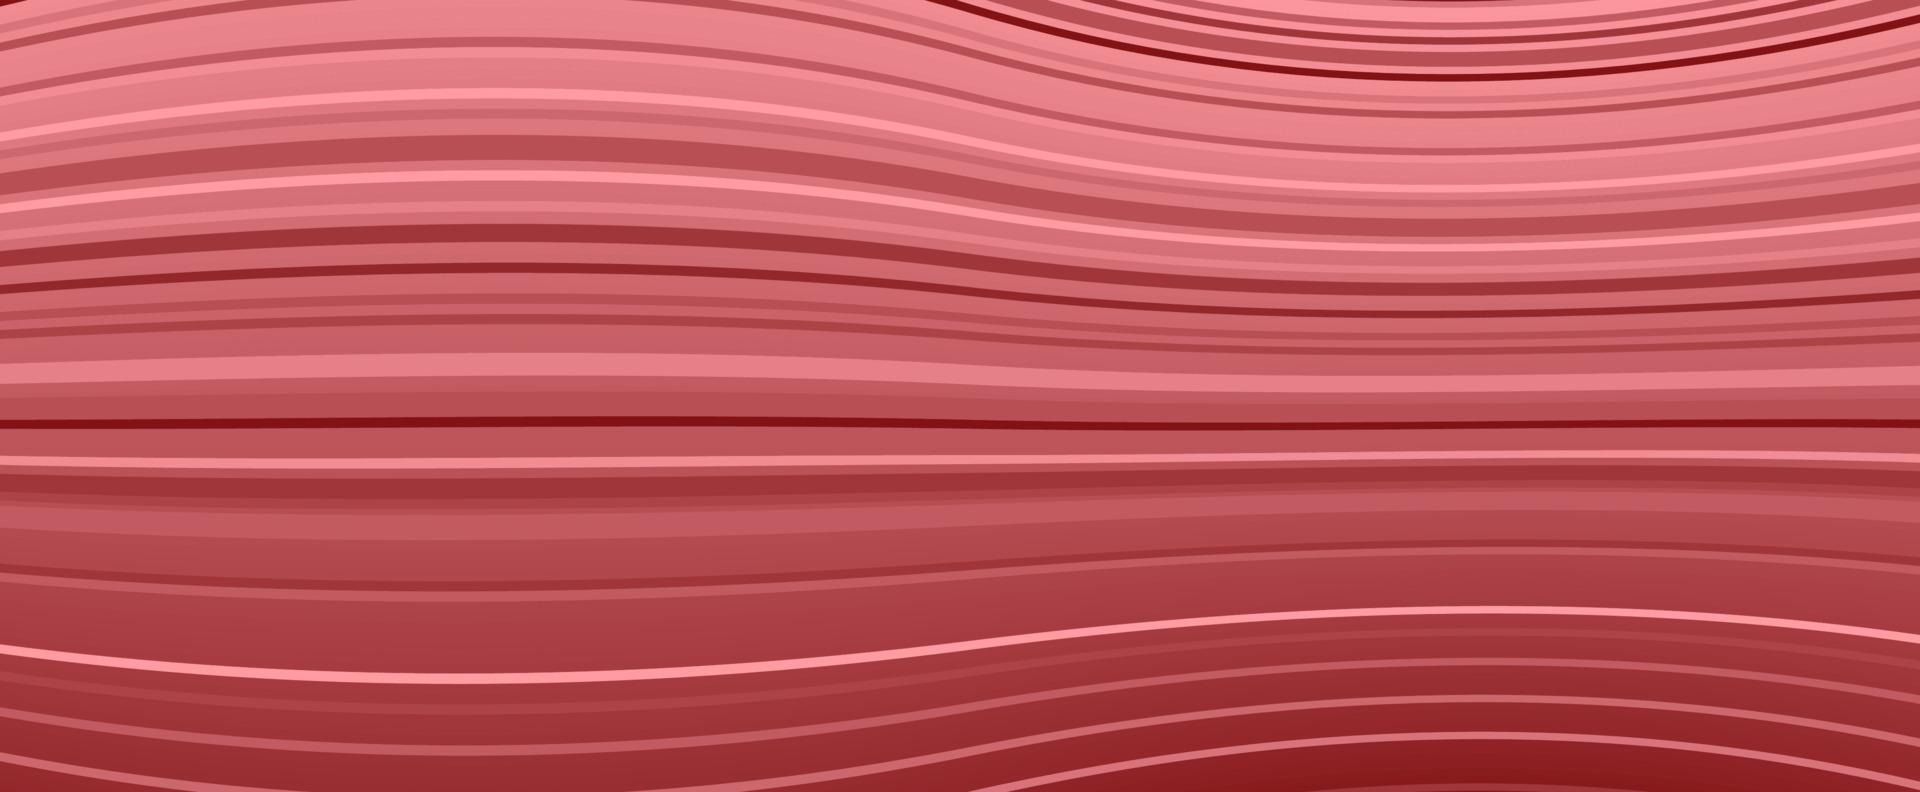 vektor bakgrund av röda ränder i förvrängd utrymme form